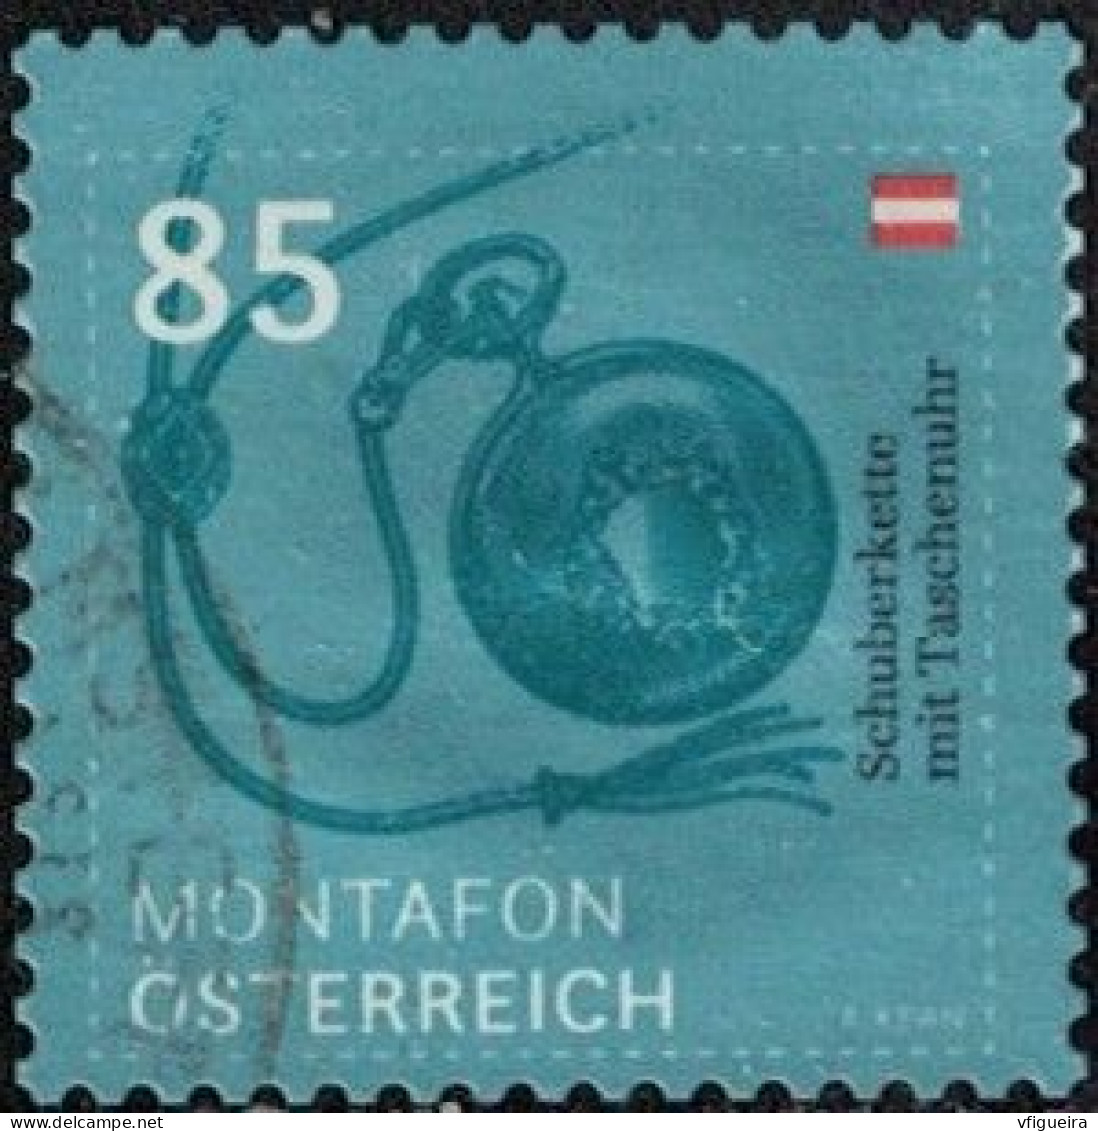 Autriche 2020 Oblitéré Used Montafon Chaîne Avec Montre De Poche Y&T AT 3366 SU - Used Stamps